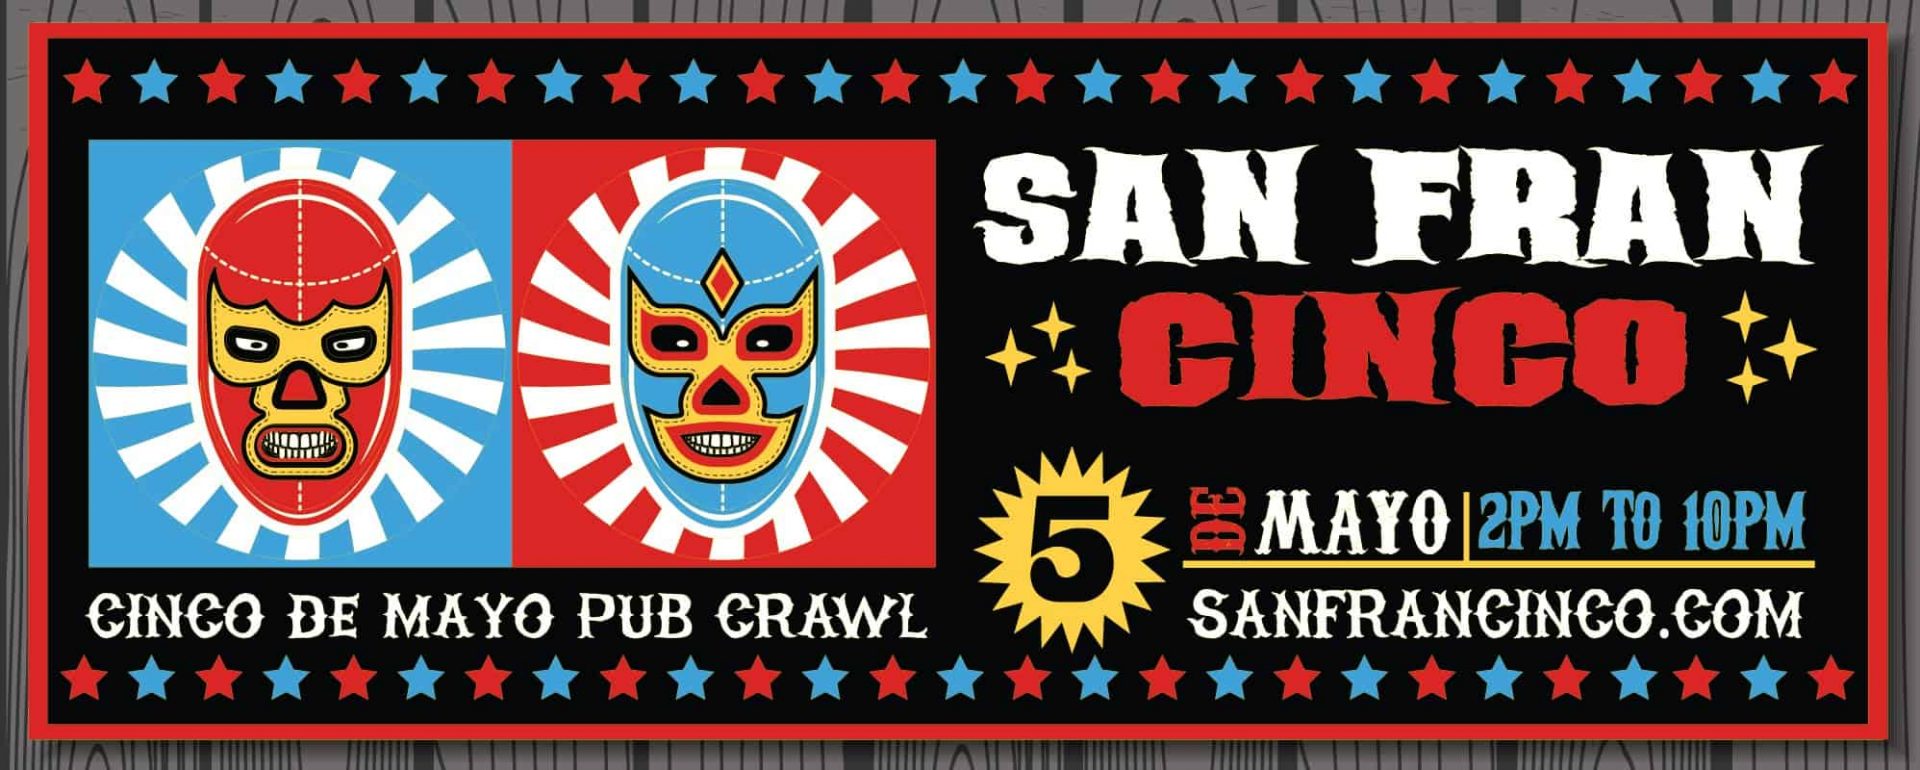 San-Francisco-Cinco-De-Mayo-Pub-Crawl-web2